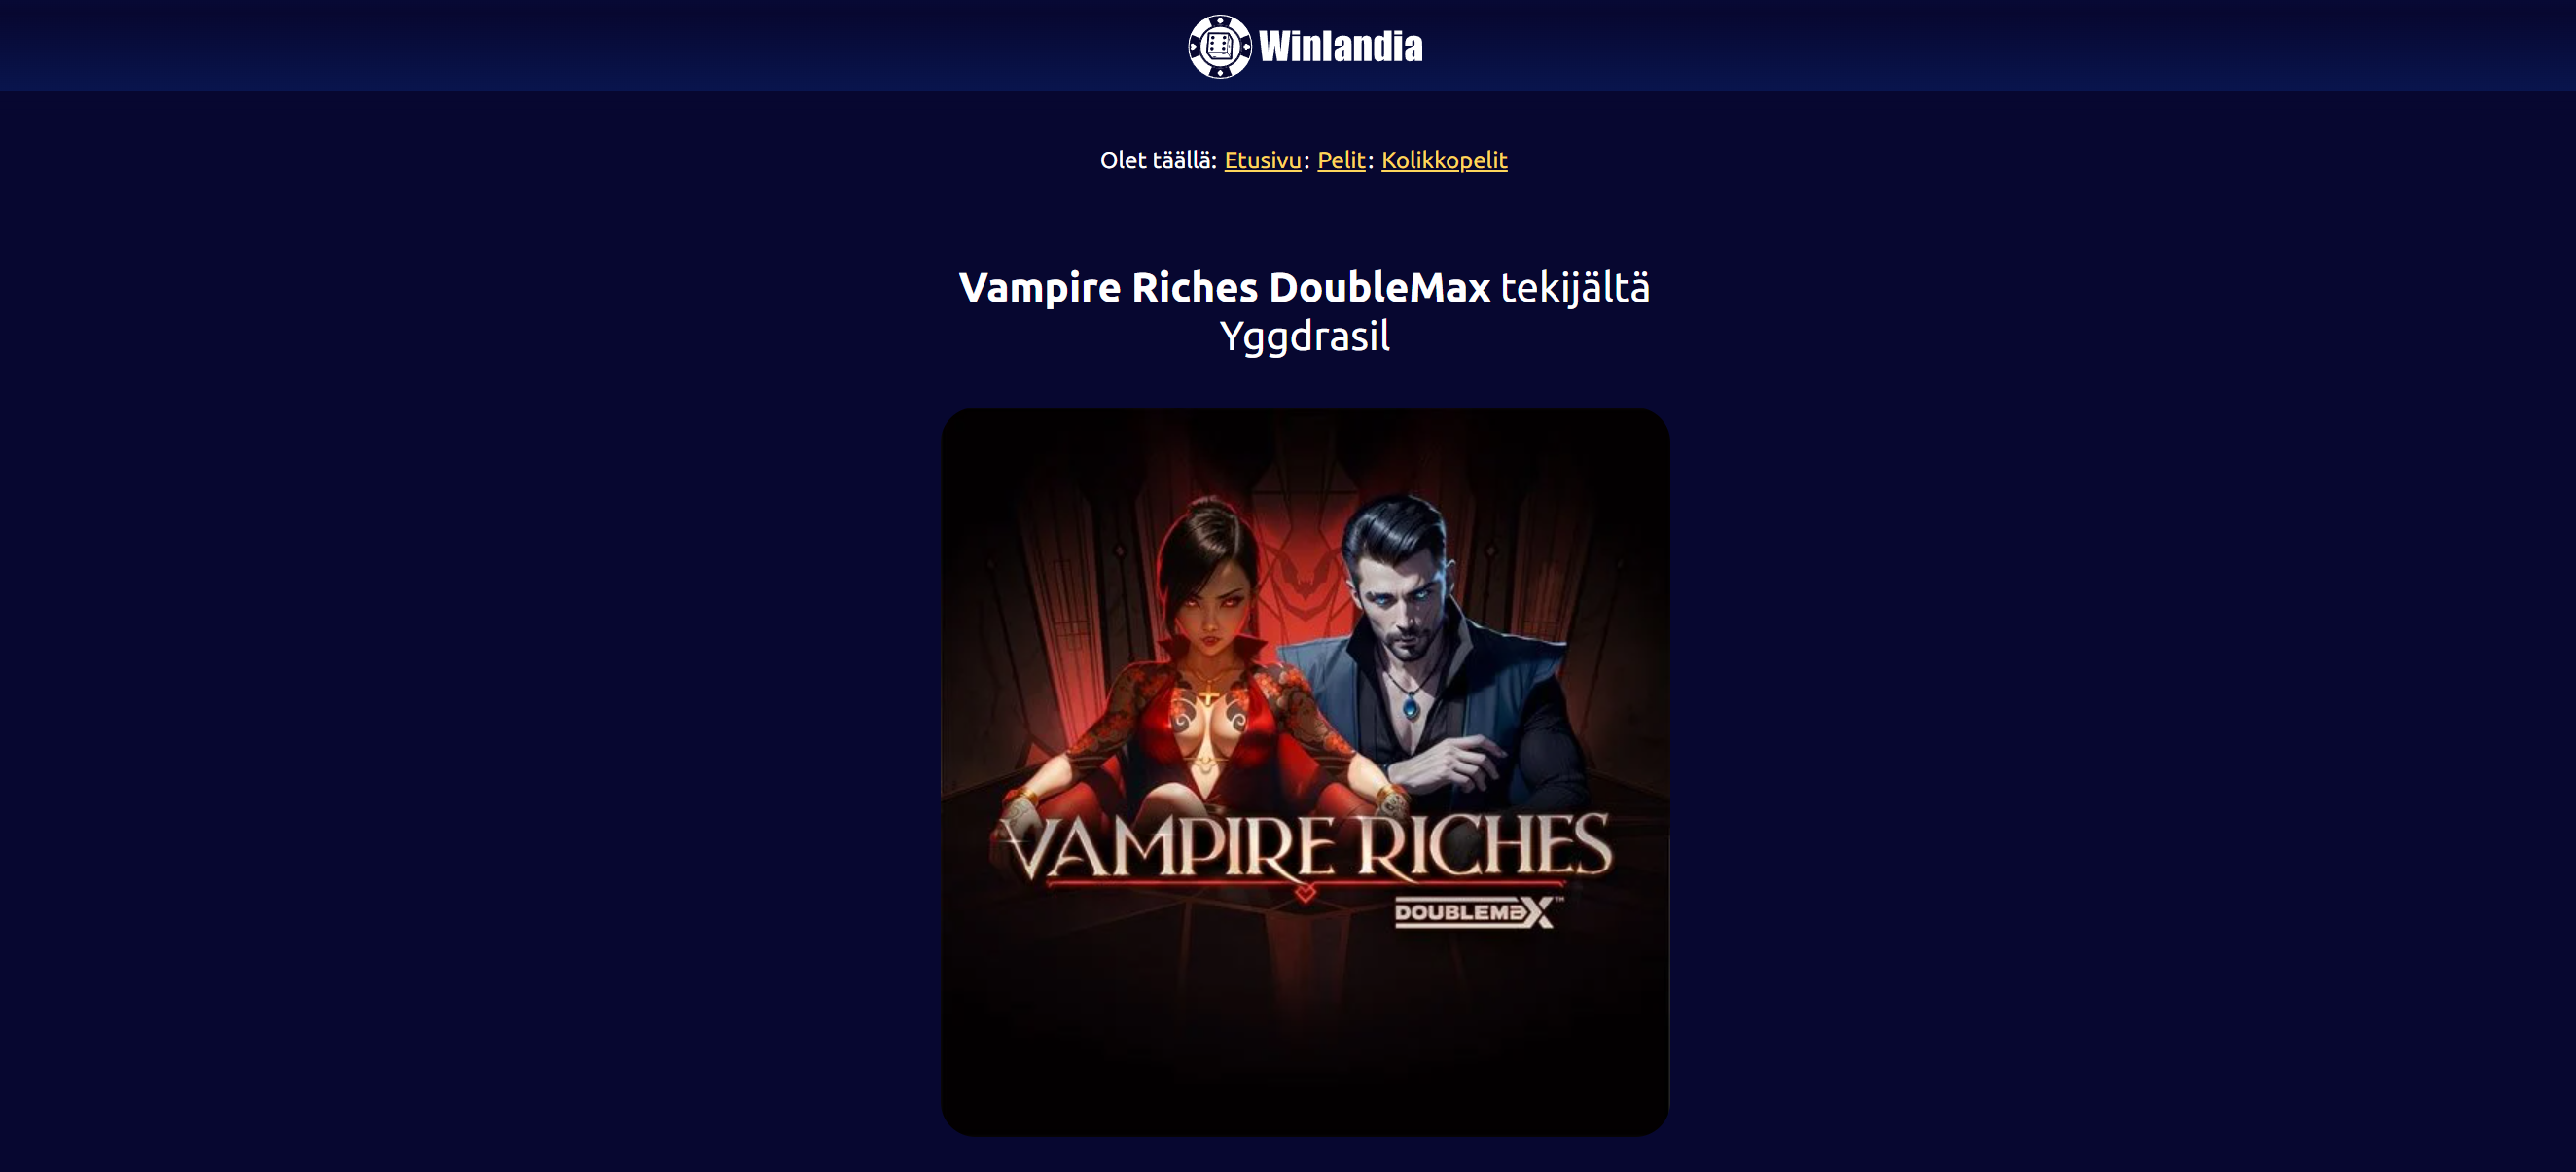 Vampire Riches DoubleMax tekijältä Yggdrasil.